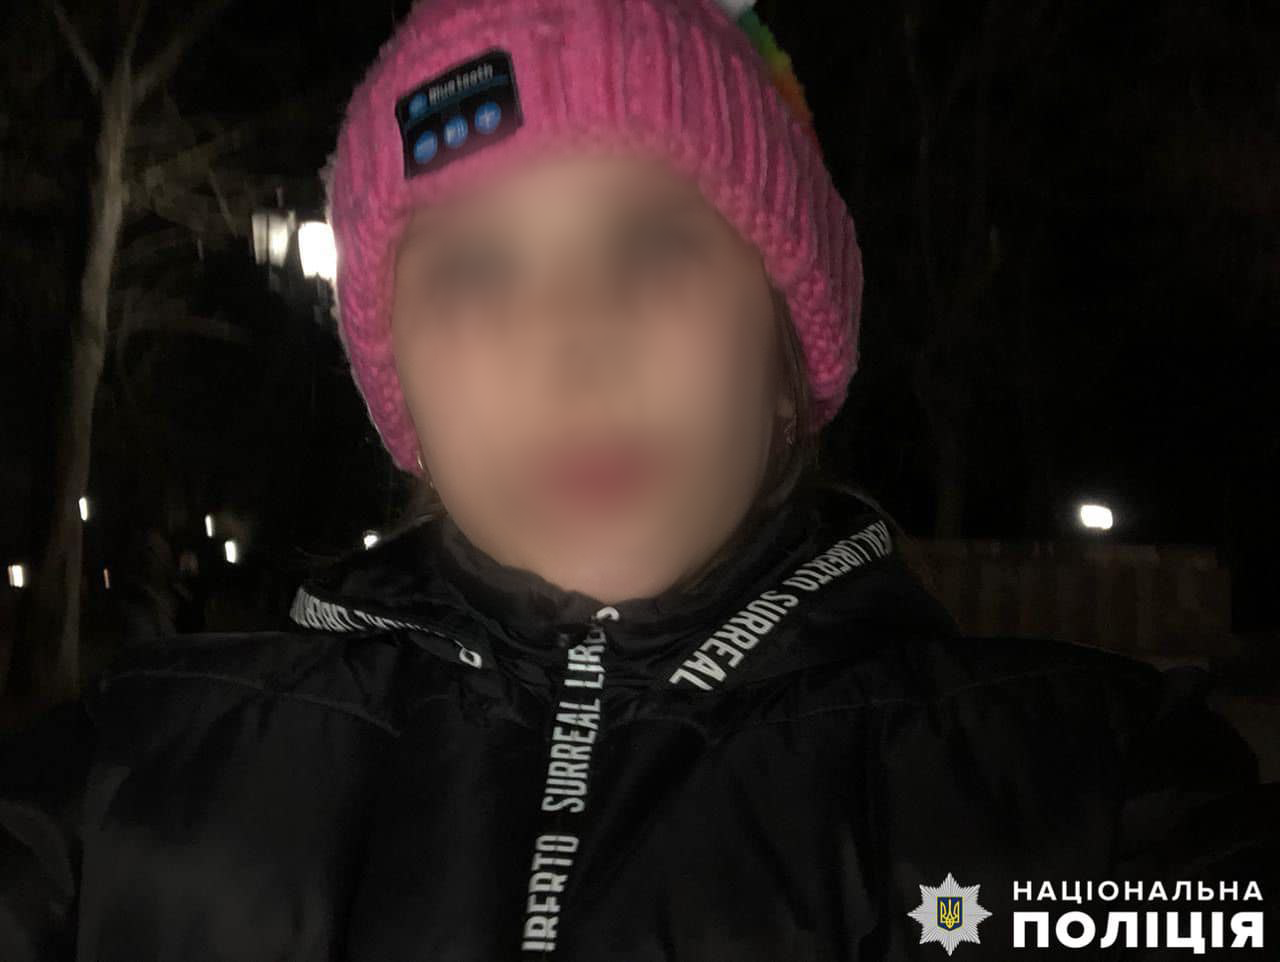 "Открыли погреб, а там Ангелинка и этот мужик": подробности похищения 8-летнй девочки в Николаевской области